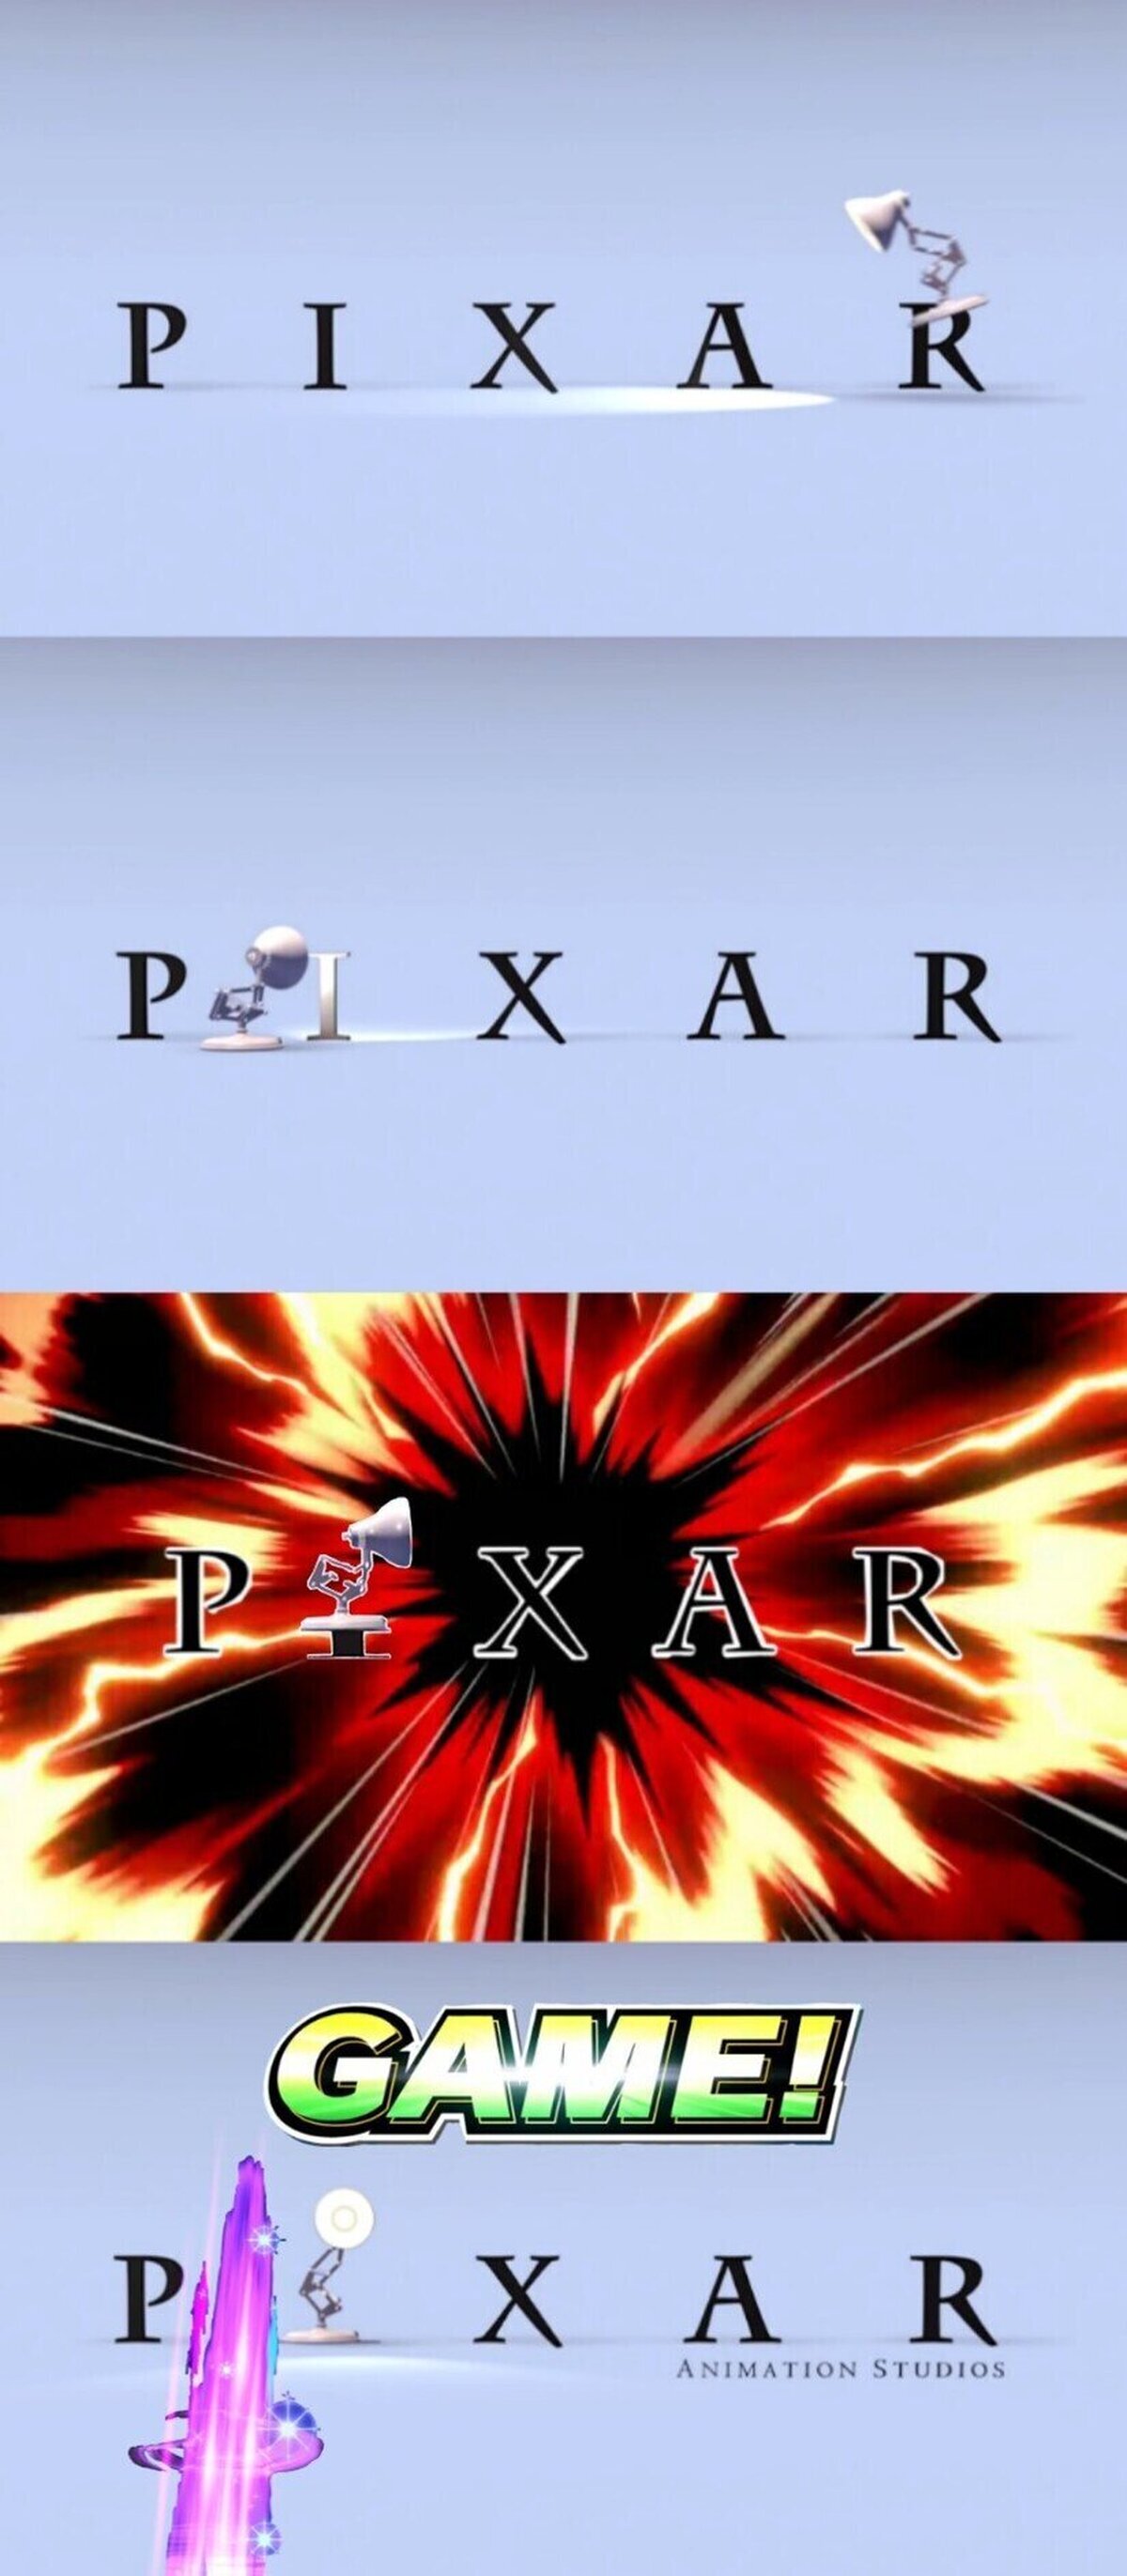 ¿Confirmamos a la lámpara de Pixar como el nuevo luchador DLC del juego?